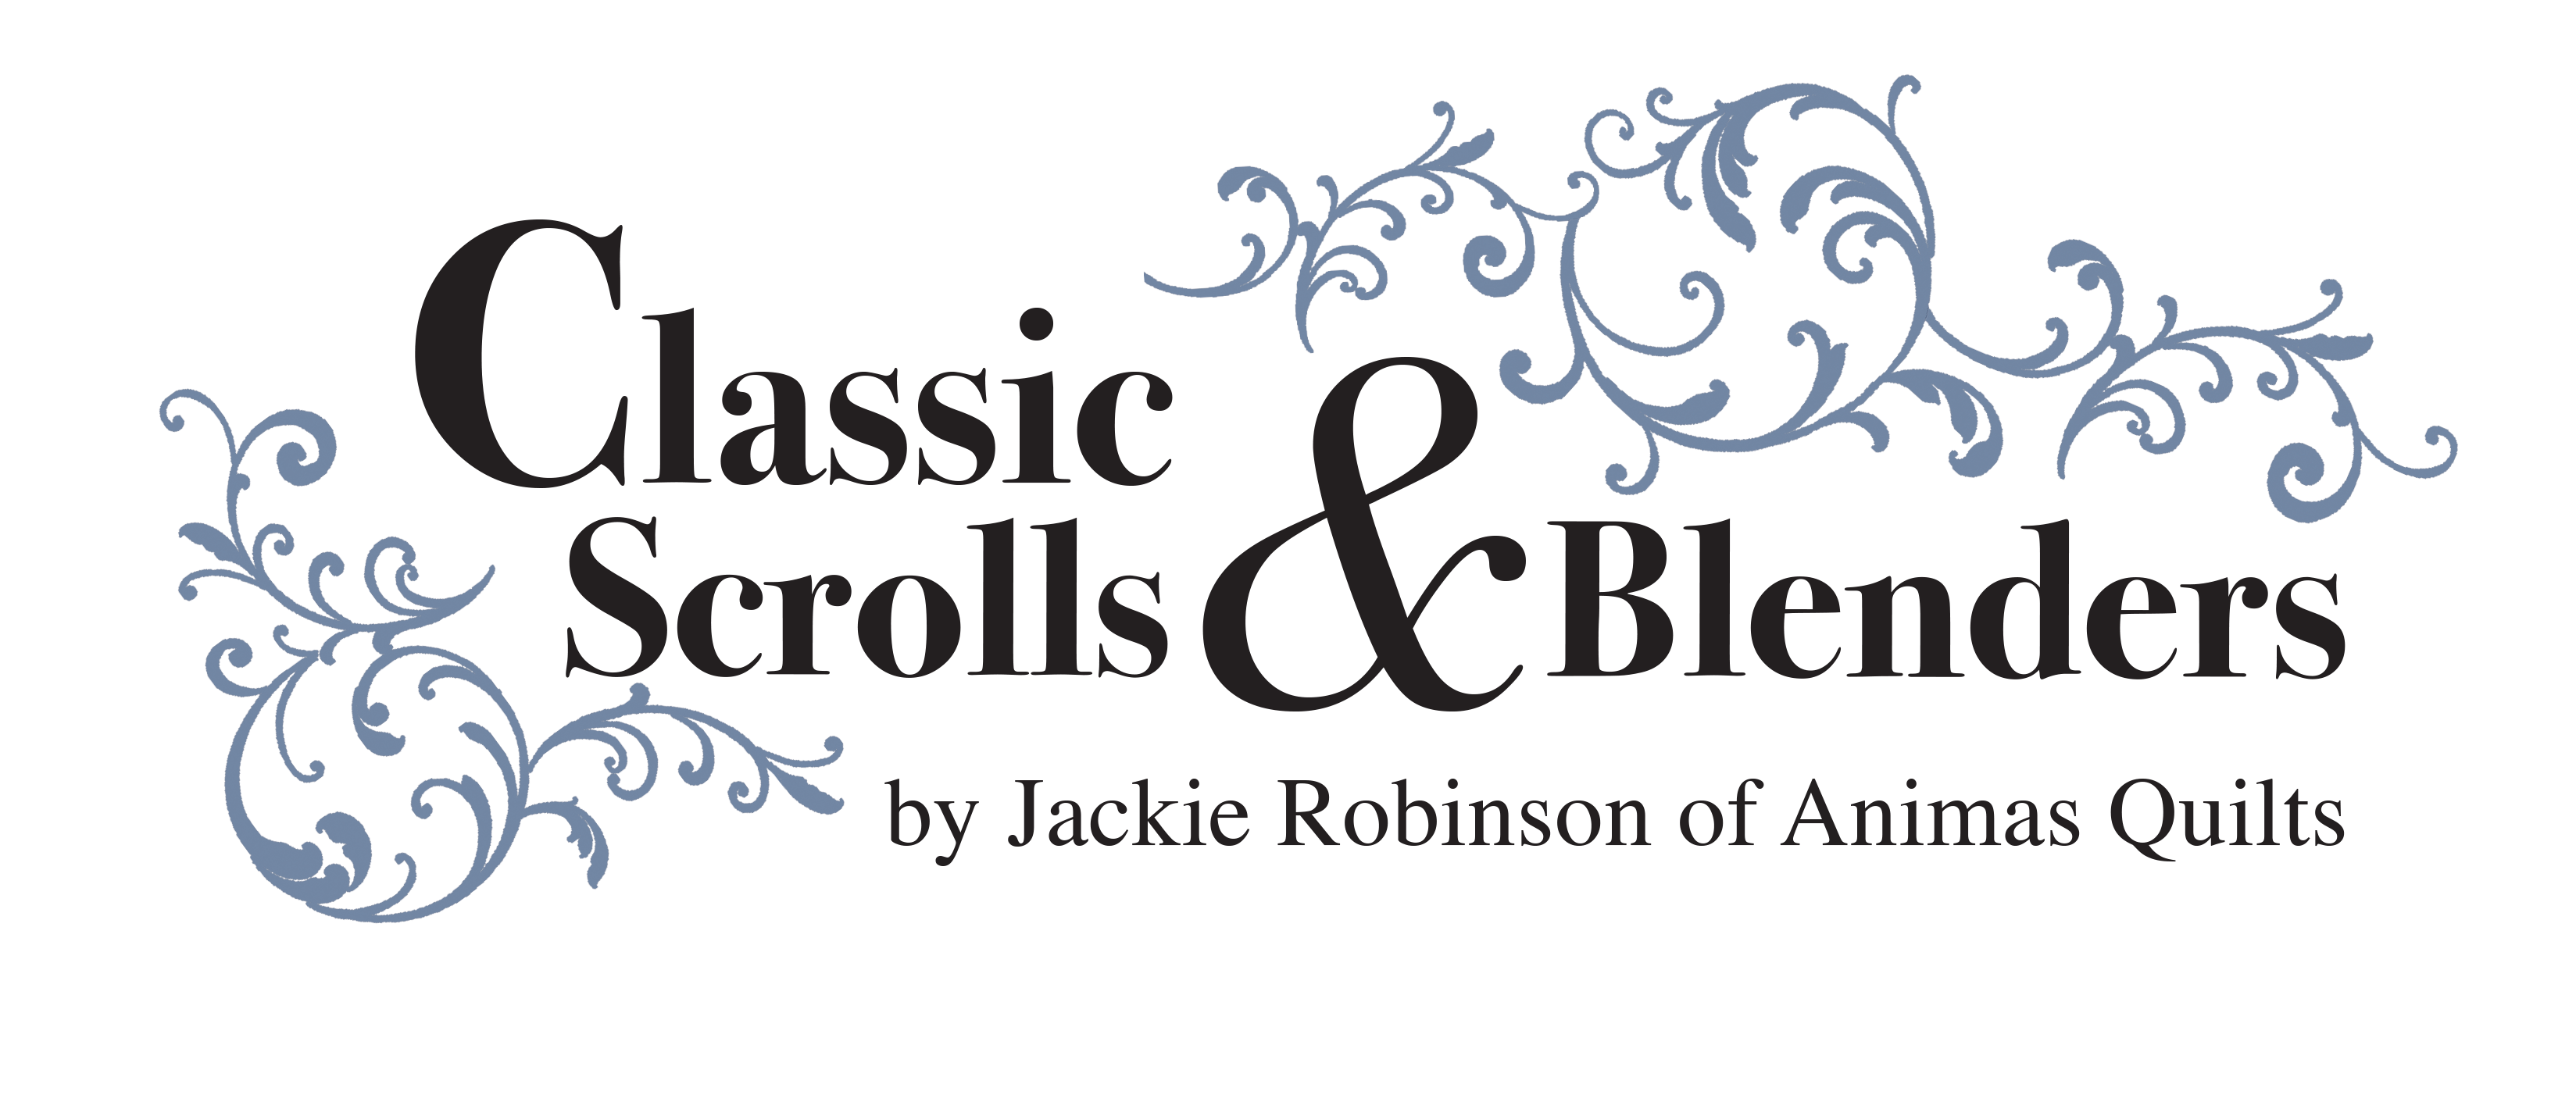 Classic Scrolls & Blenders